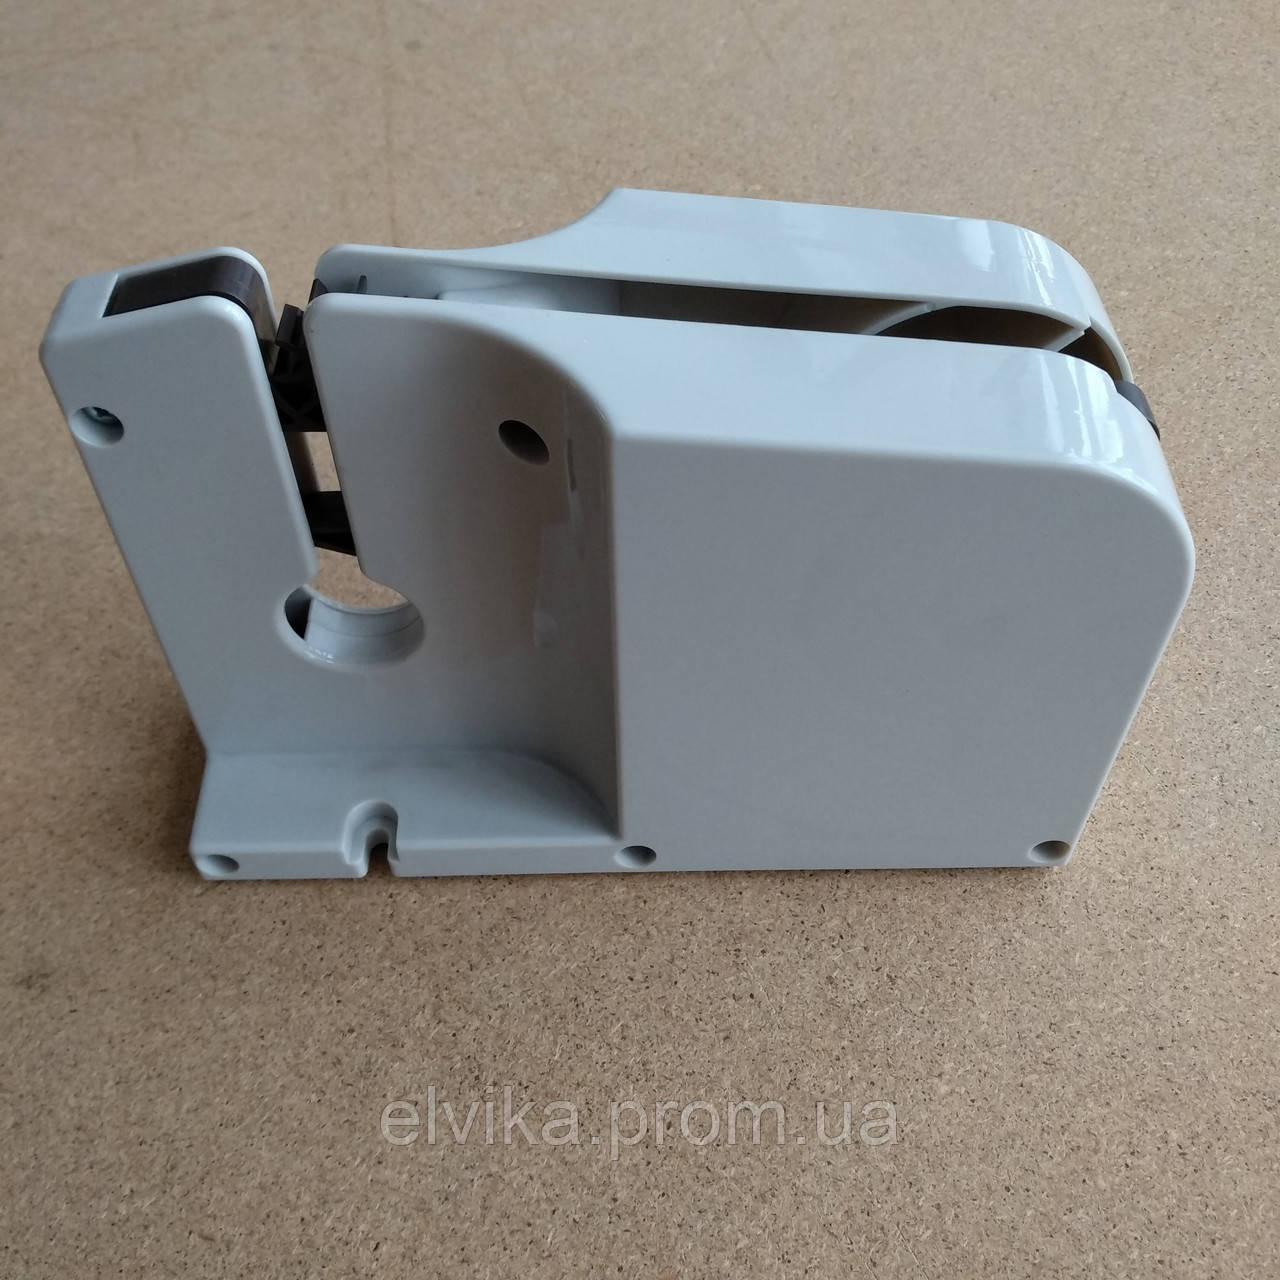 Кліпсатор-пристрій для склеювання пакетів скотчем 9-12мм